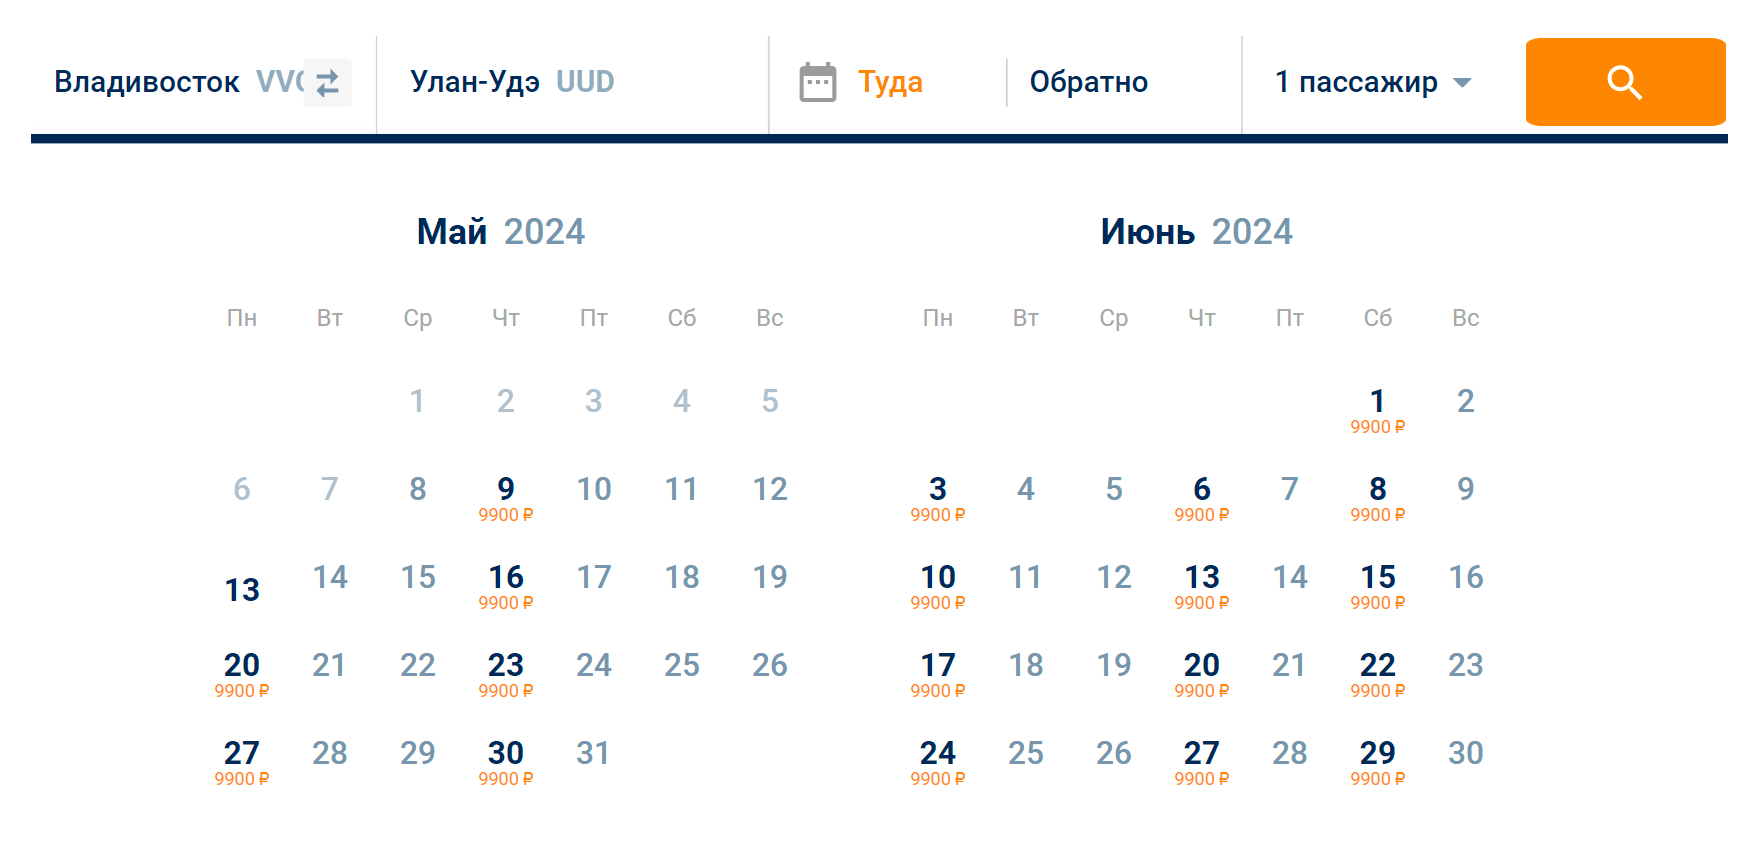 Стоимость перелета из Владивостока в Улан-Удэ по субсидируемому тарифу — 9900 ₽. Она не меняется в зависимости от даты вылета. Источник: flyaurora.ru